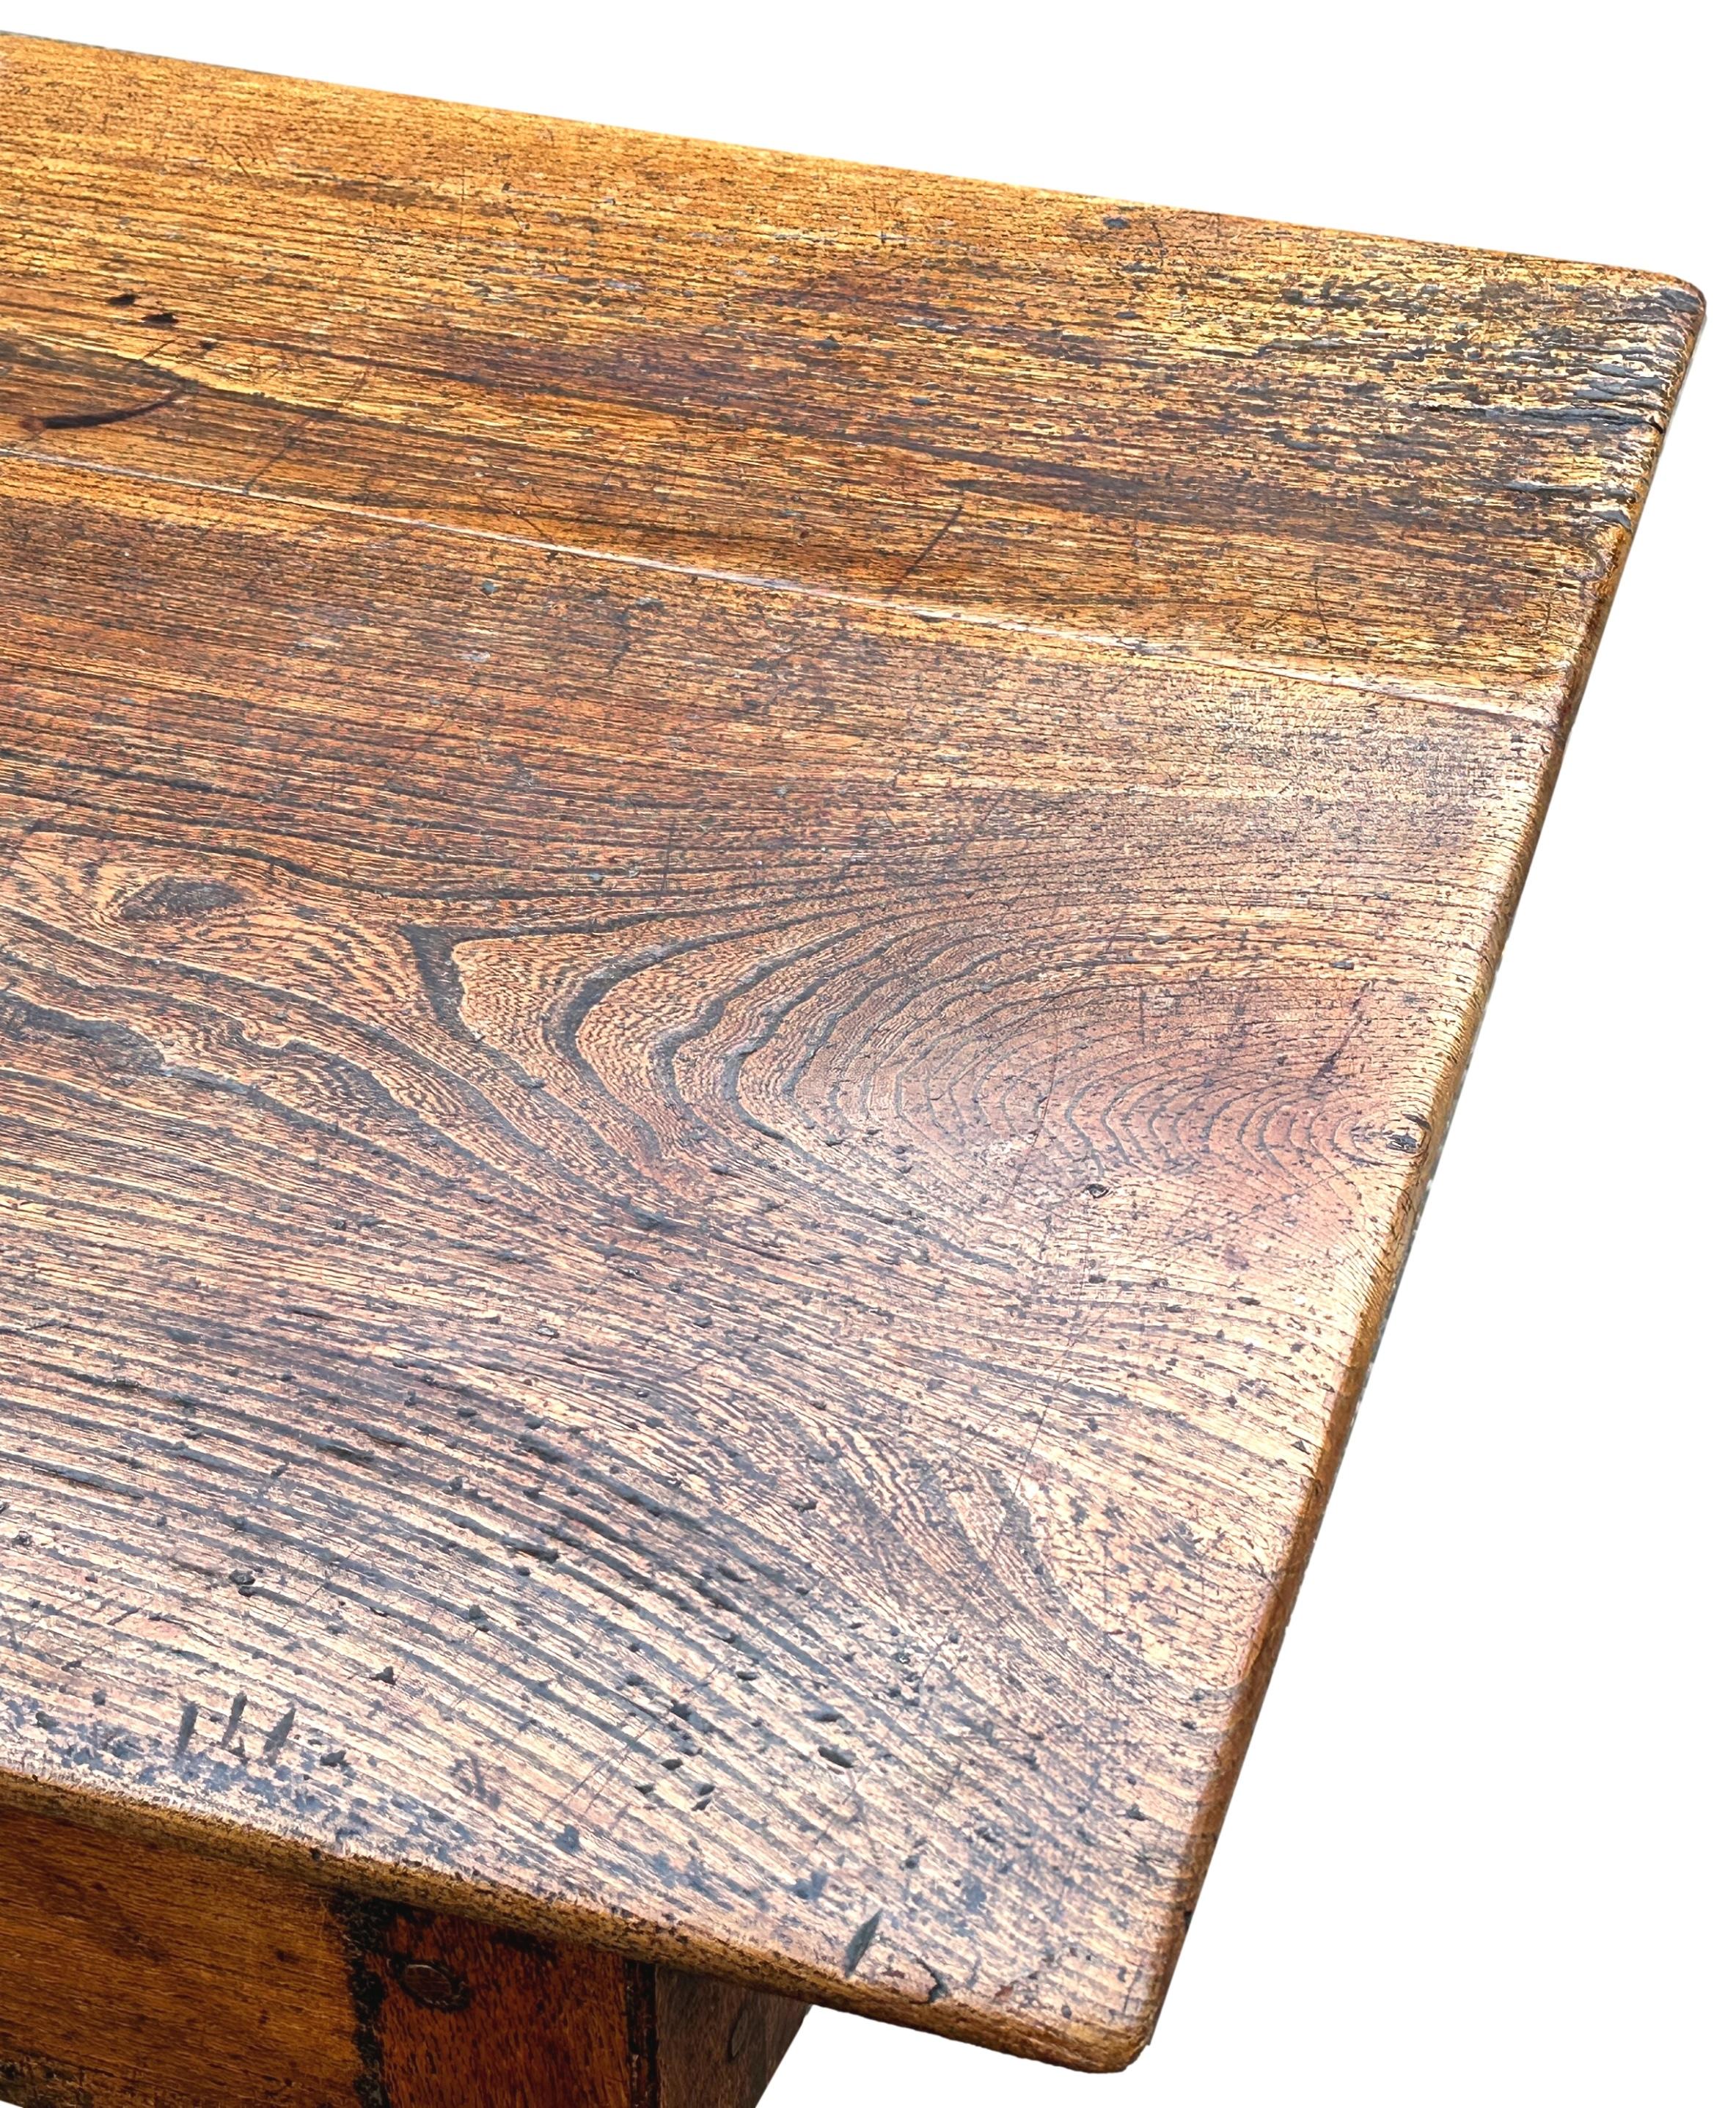 Superbe table de cuisine ou table de réfectoire en orme anglais géorgien du XVIIIe siècle, rarement trouvée, pouvant accueillir 8 personnes très confortablement, avec un plateau en planches superbement sculpté conservant une couleur et une patine